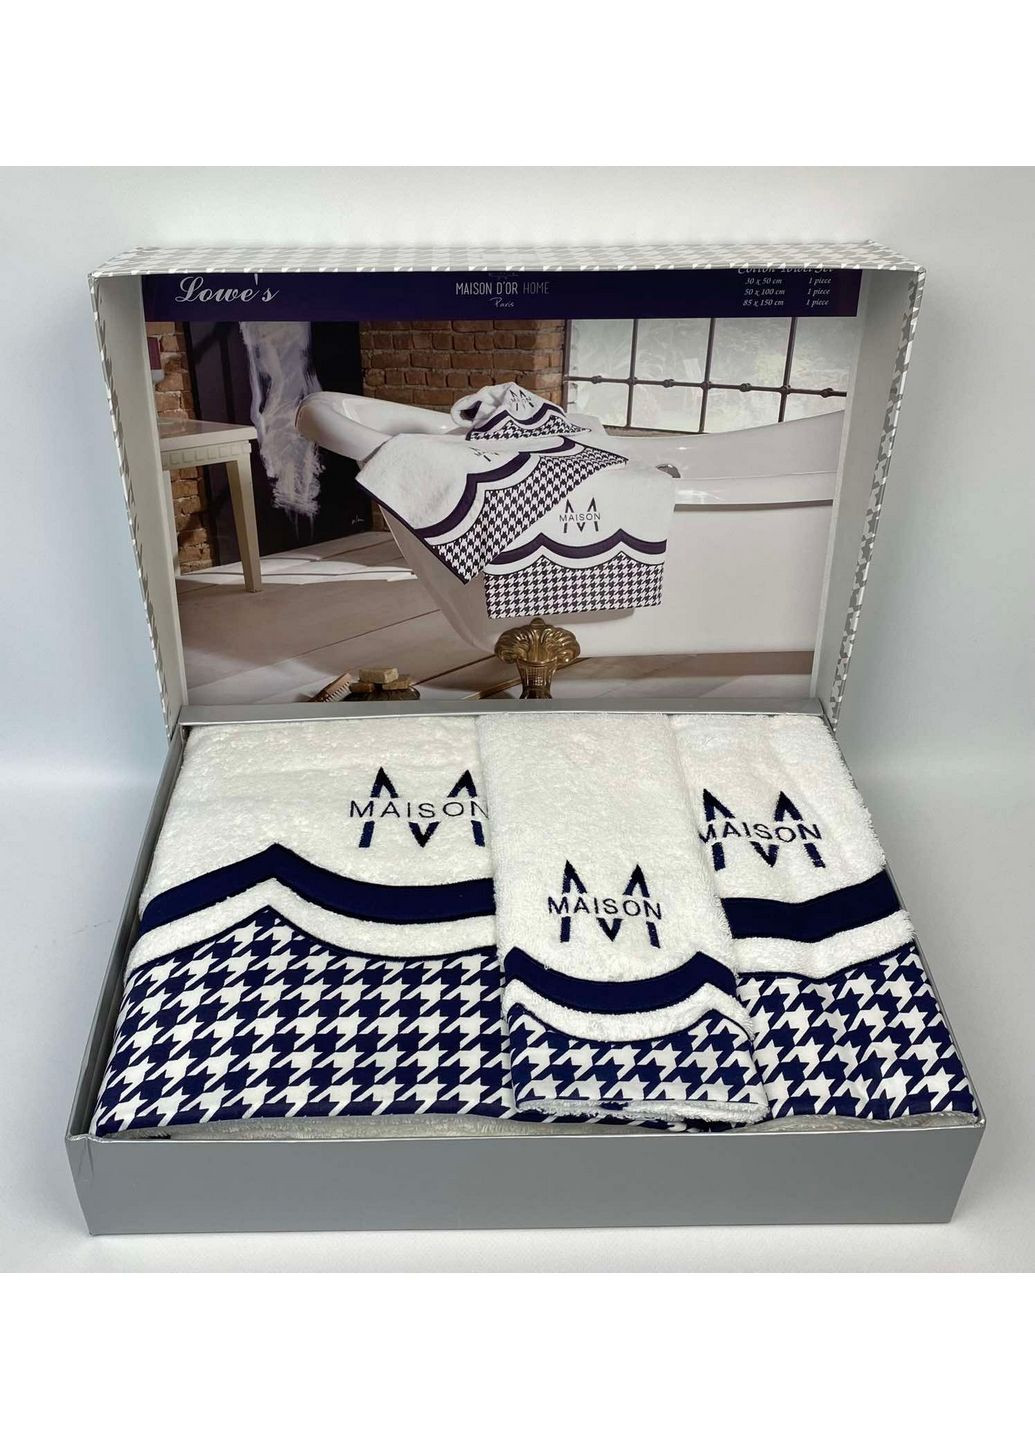 Maison D'or комплект полотенец (3 штуки) комбинированный производство - Турция